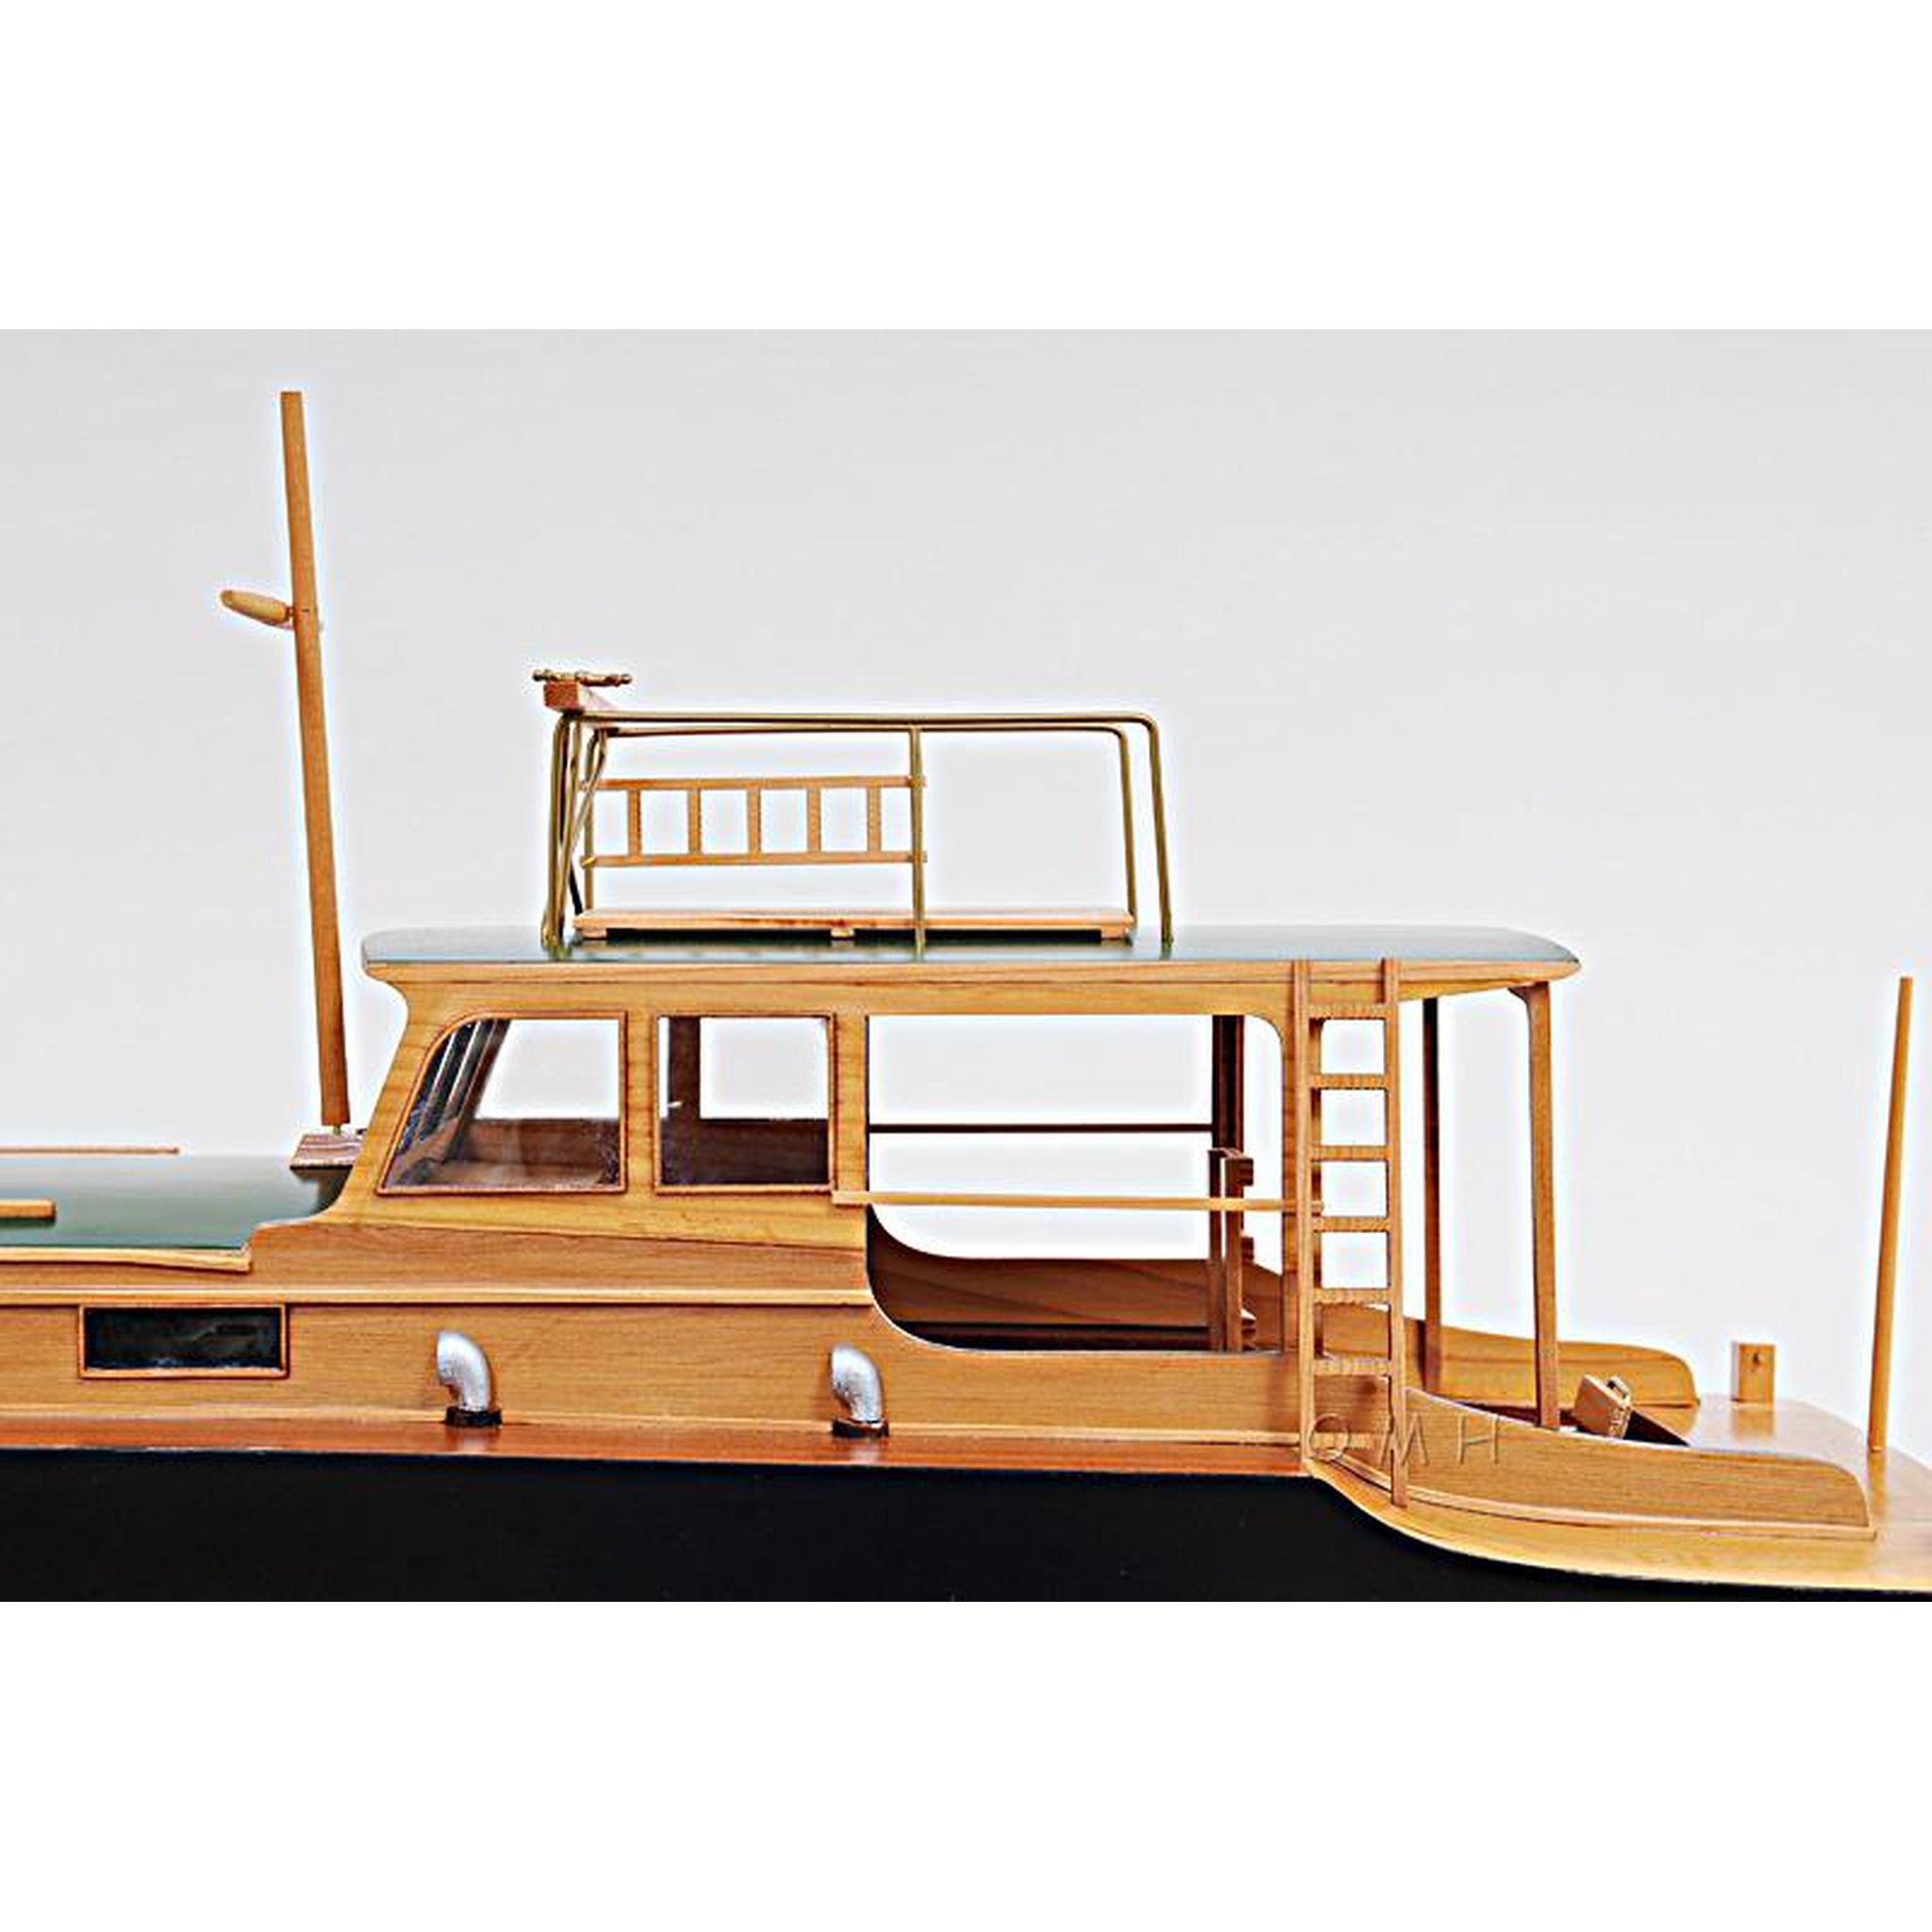 Buy Hemingway™ Pilar Fishing Boat – Adama Model Ships